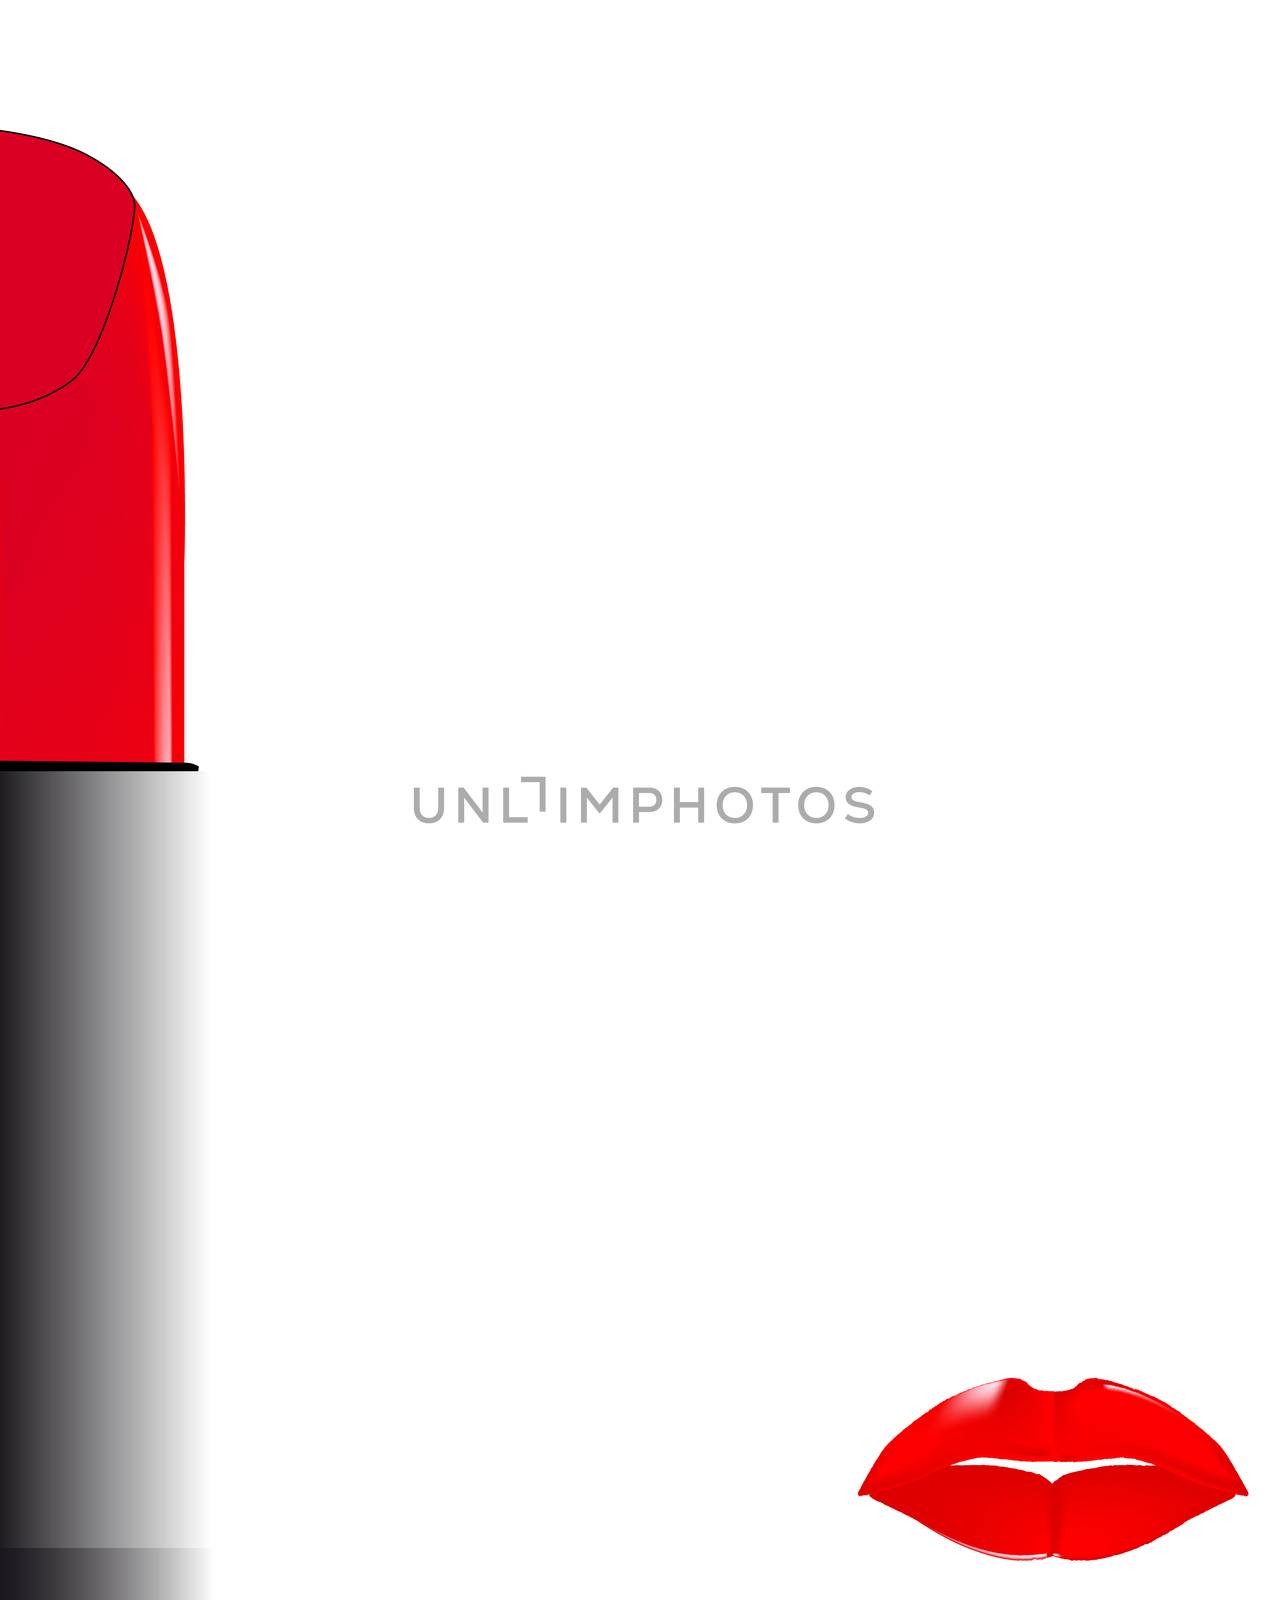 Lipstick by Bigalbaloo